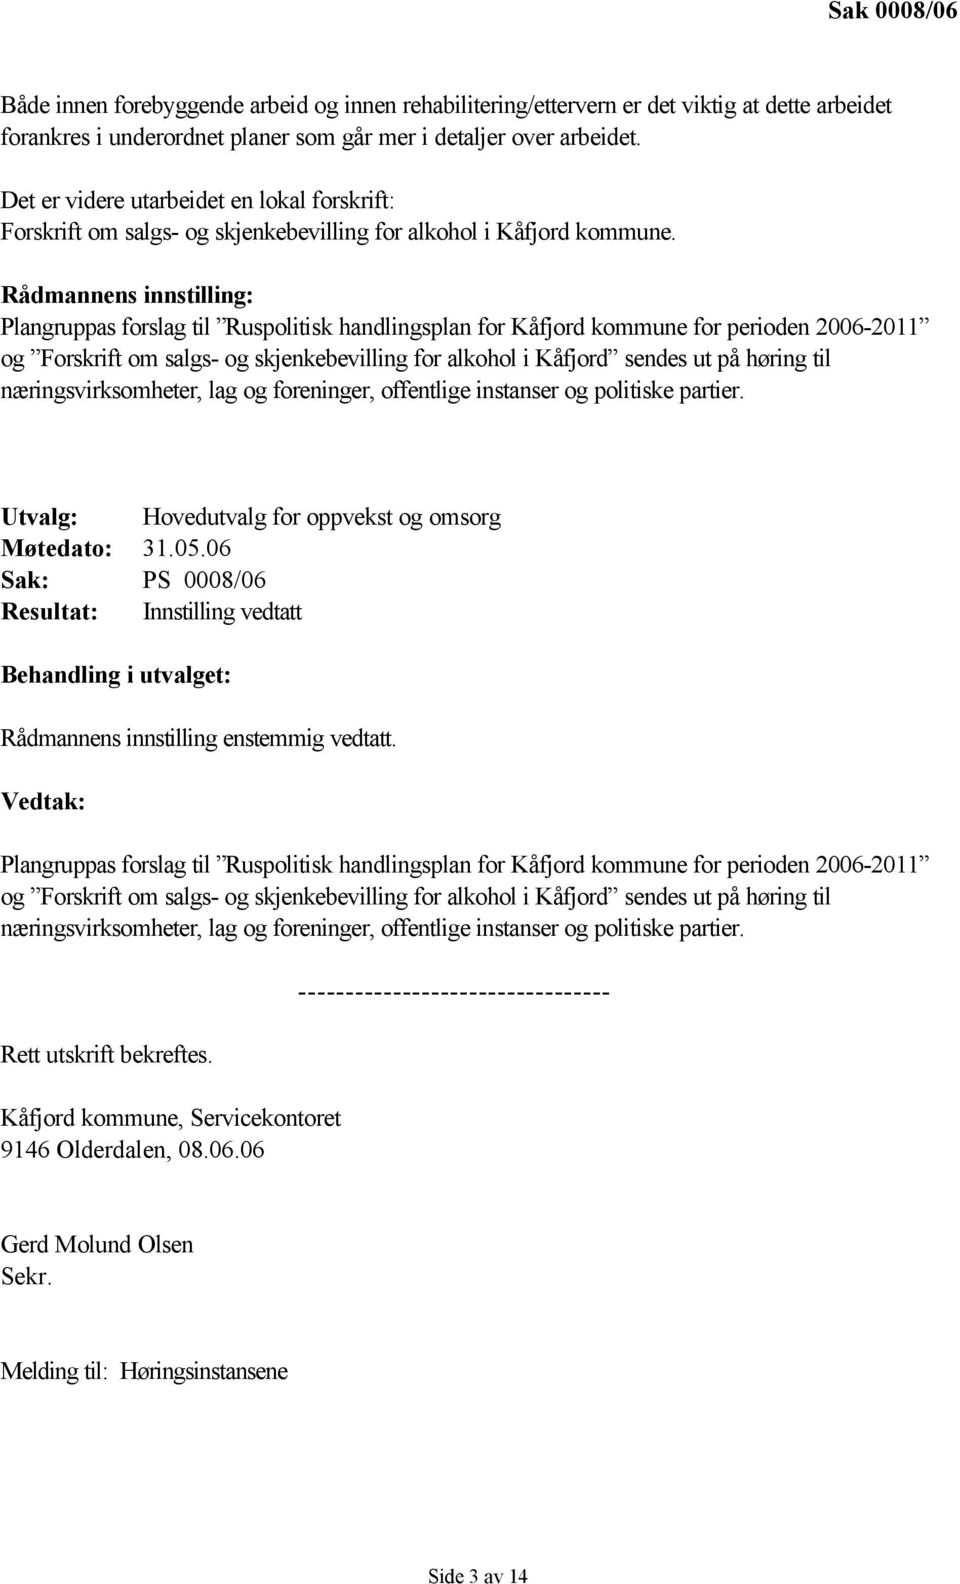 Rådmannens innstilling: Plangruppas forslag til Ruspolitisk handlingsplan for Kåfjord kommune for perioden 2006-2011 og Forskrift om salgs- og skjenkebevilling for alkohol i Kåfjord sendes ut på